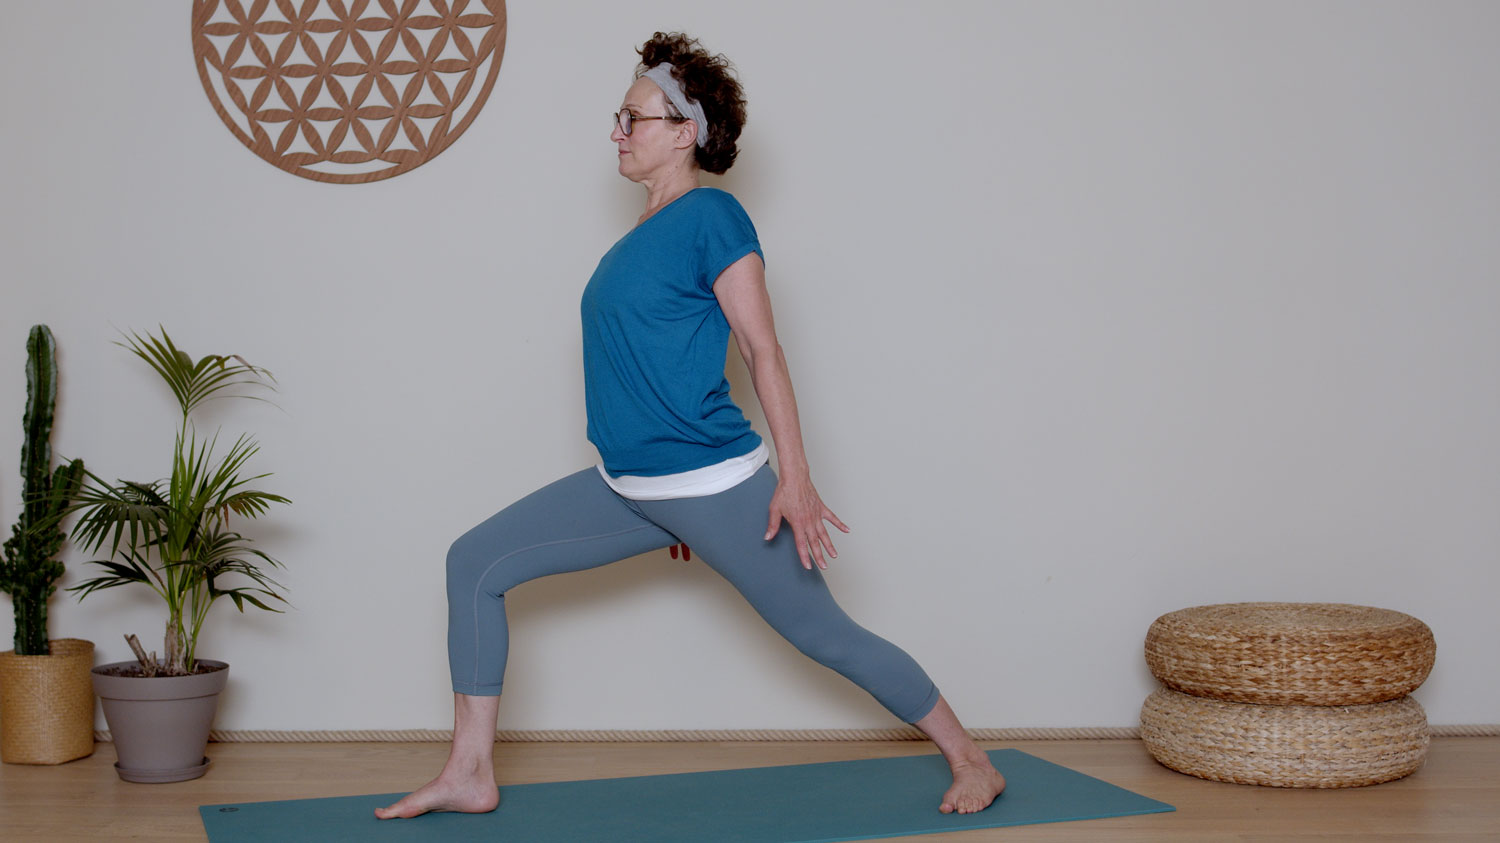 Yoga dynamique - 30 mn - Prana Vayu | Cours de yoga en ligne avec Delphine Denis | Hatha Yoga dynamique